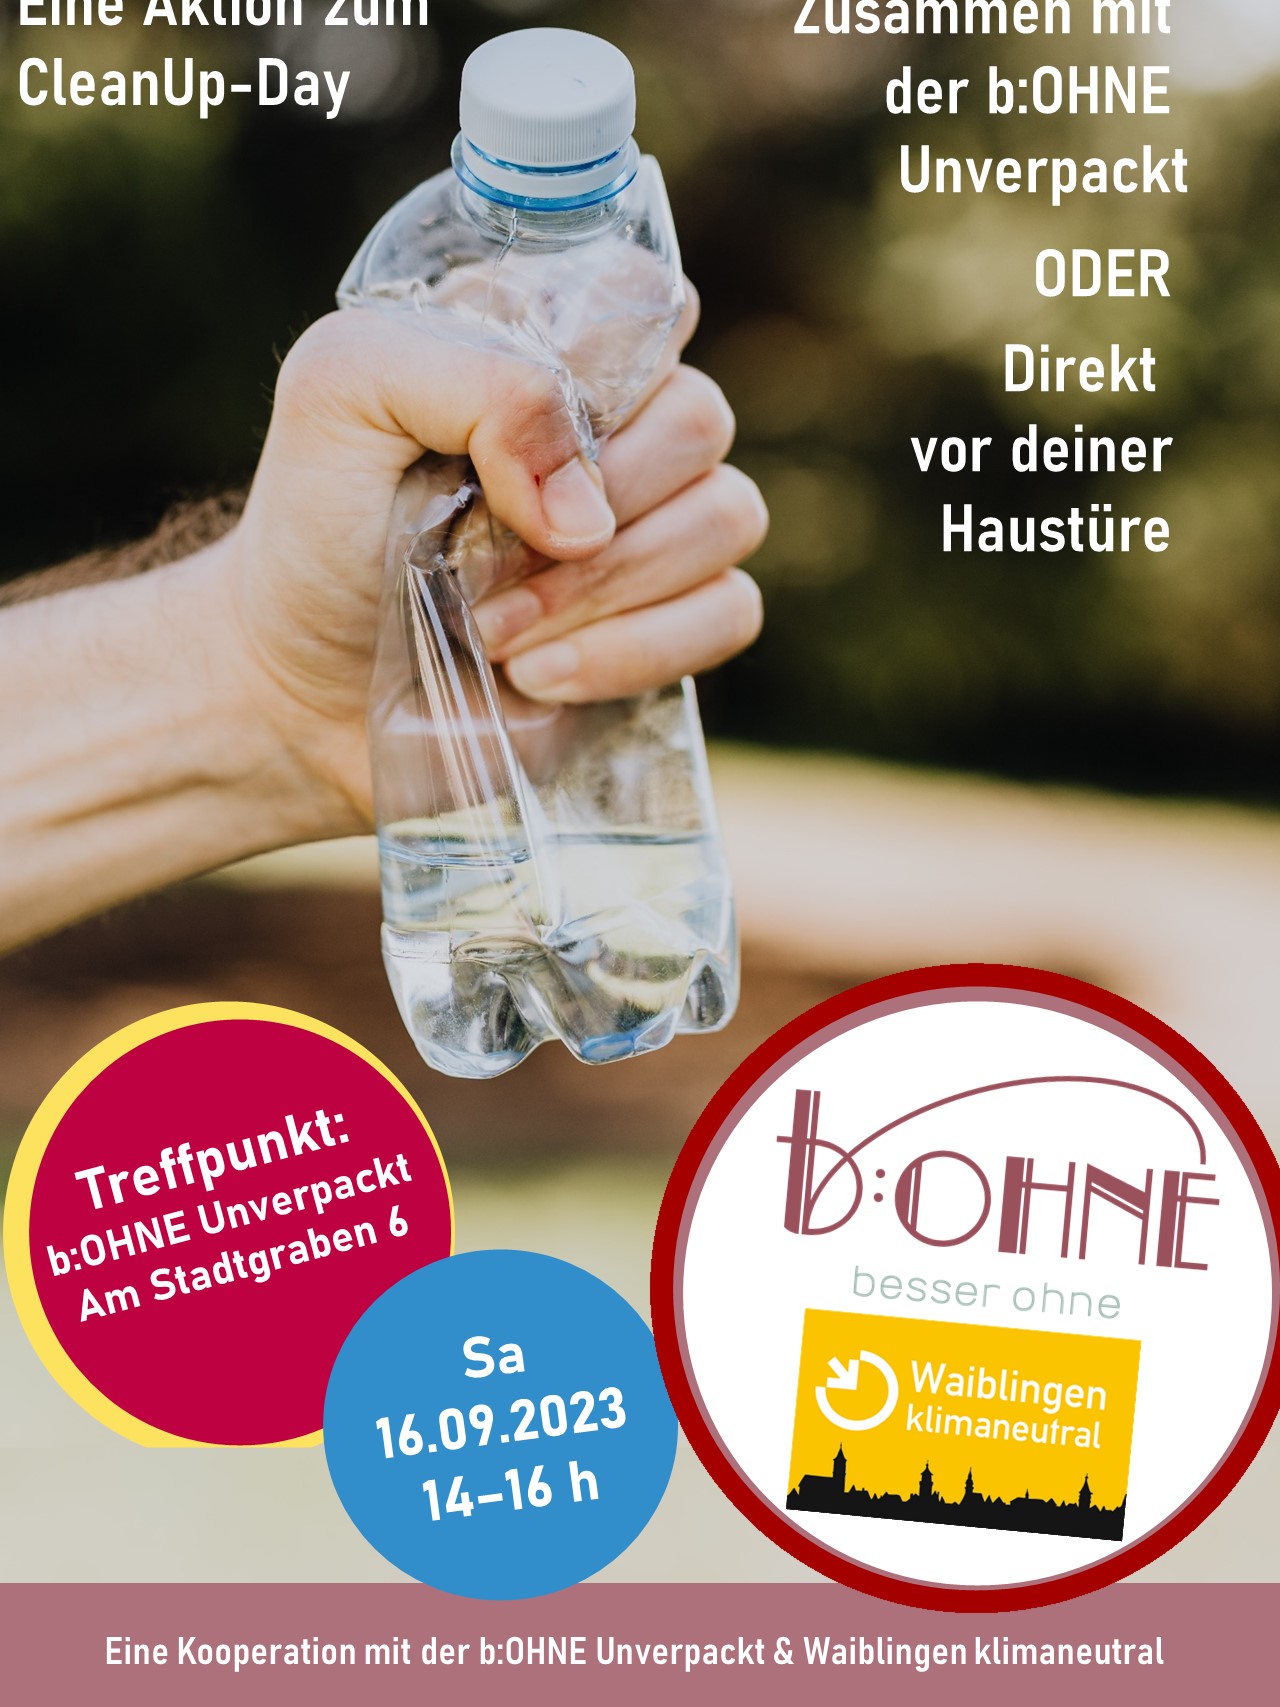 Mit der b:OHNE Unverpackt - besser OHNE Müll (Baden-Württemberg)